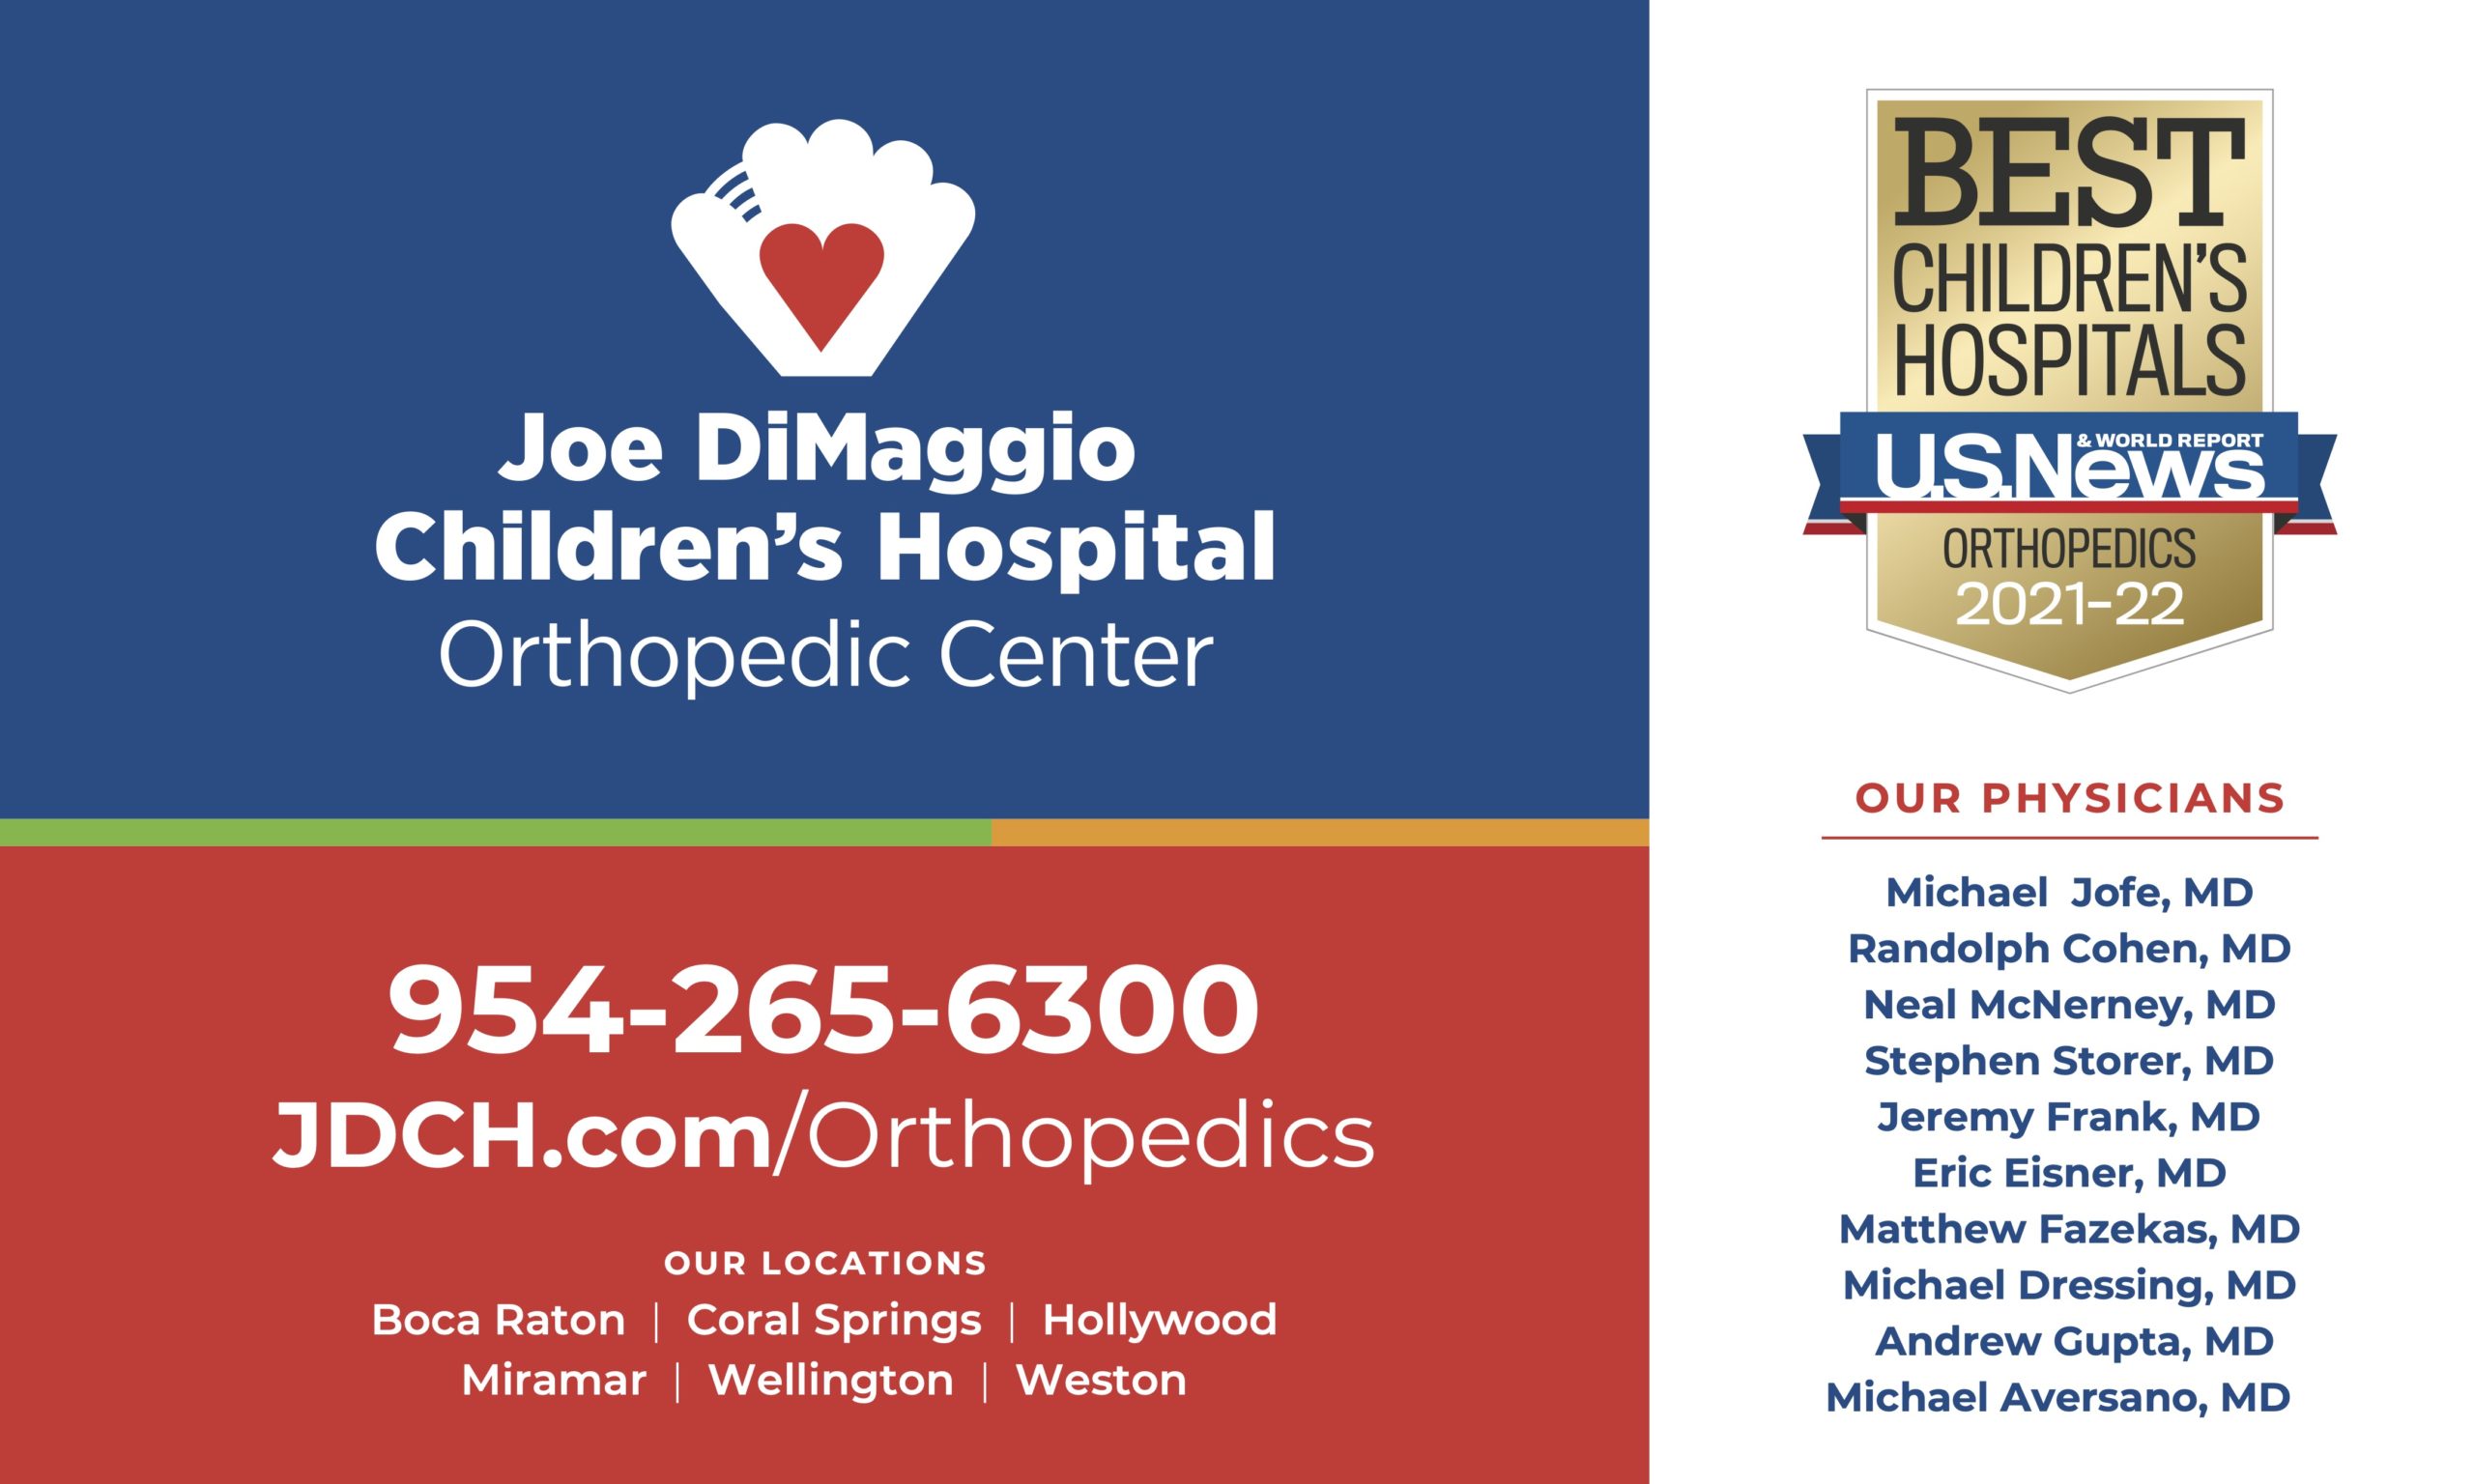 Joe DiMaggio Children's Hospital - Orthopedic Center 954-265-6300